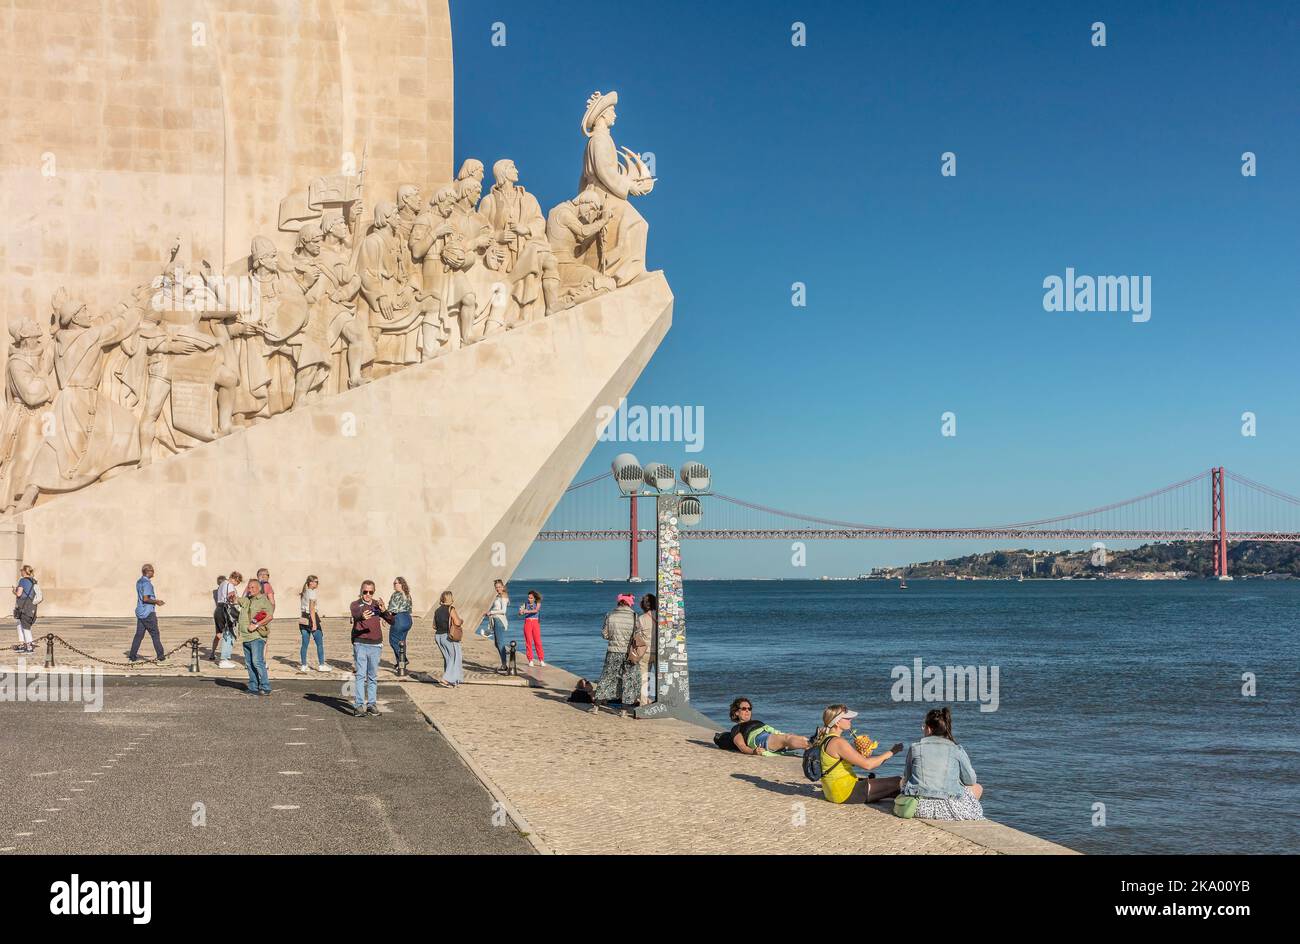 Padrão dos Descobrimentos Monument to the Discoveries with Ponte 25 de abril on the River Tagus, Belem, Lisbon, Portugal Stock Photo